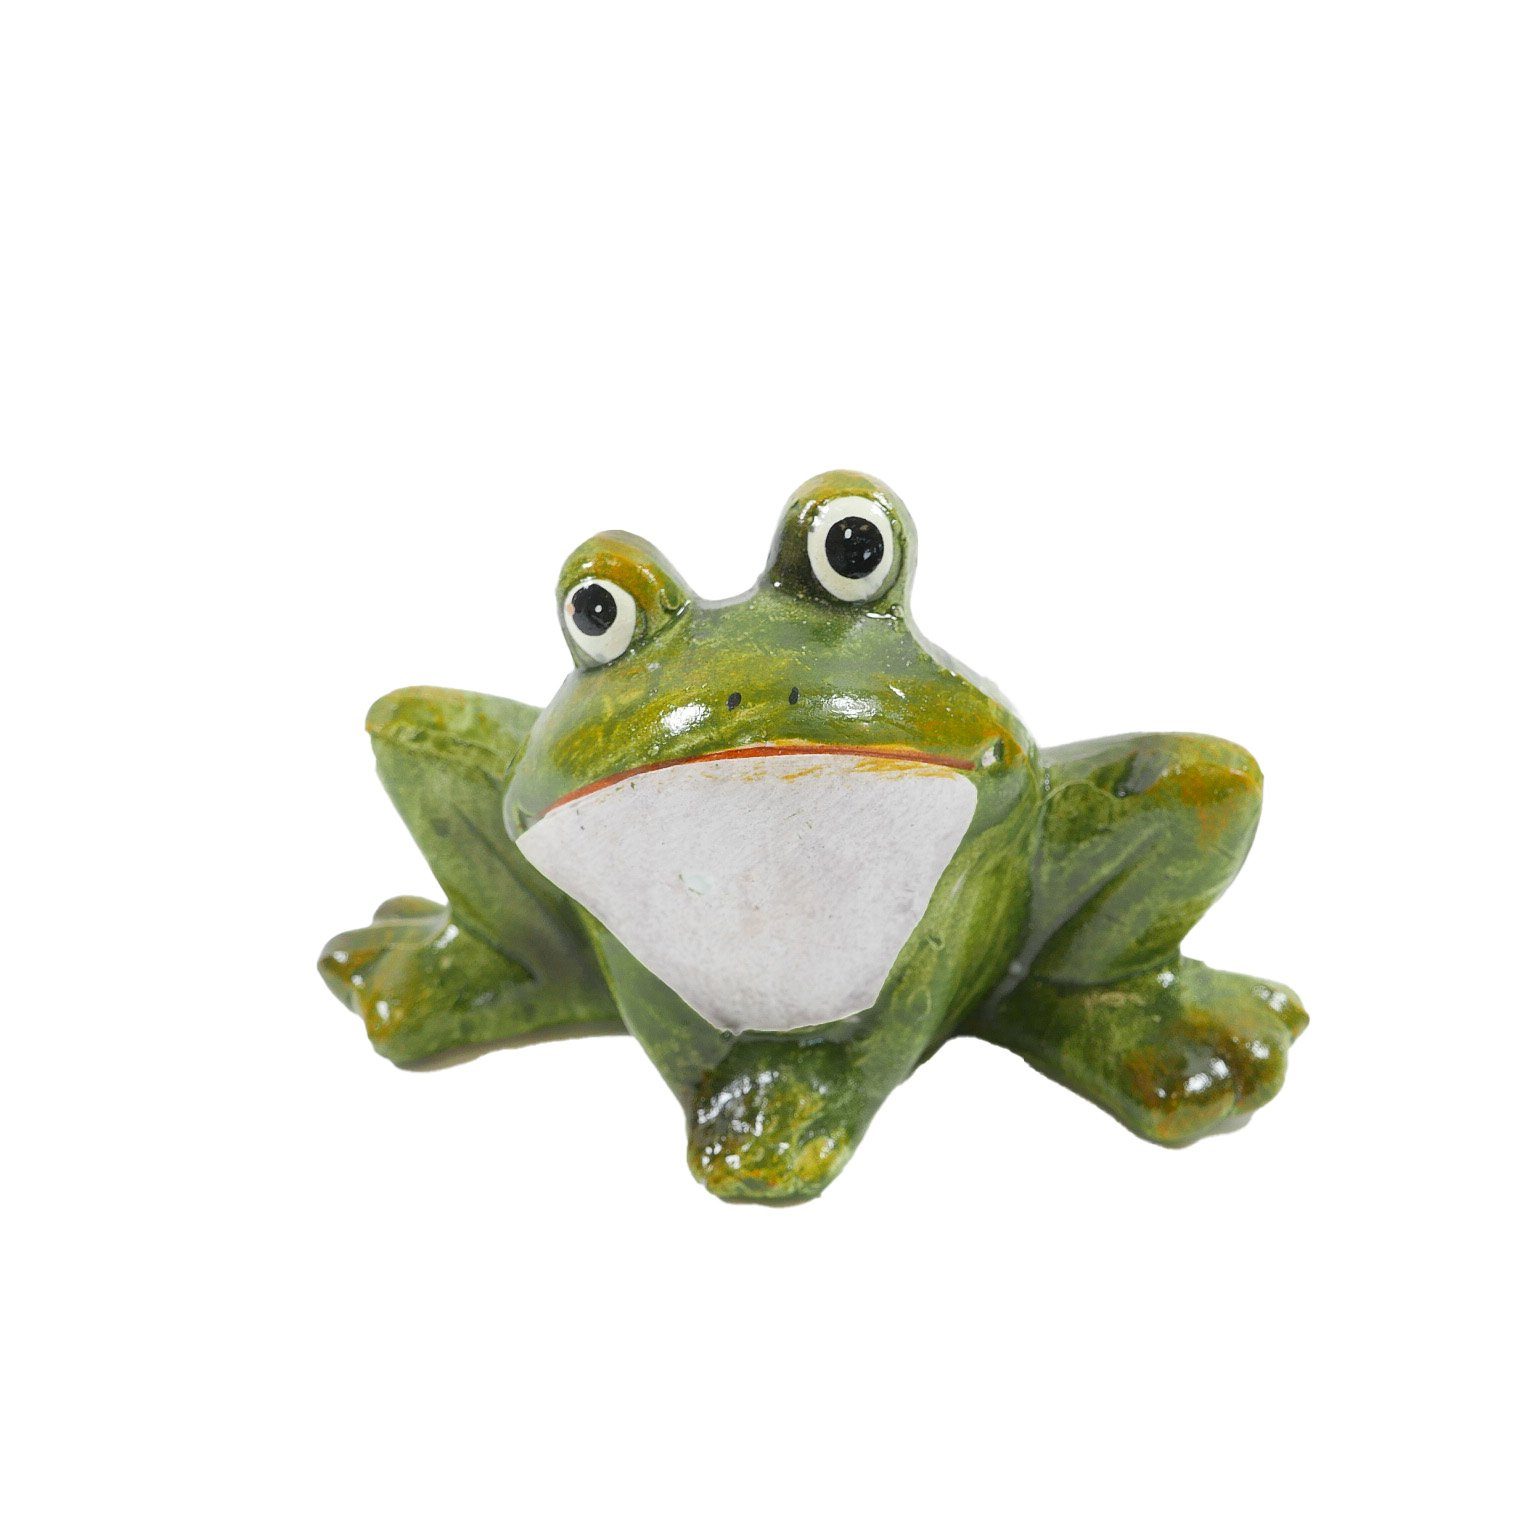 B&S Dekofigur Frosch grün Keramik 10,8x5,8x7,7 cm